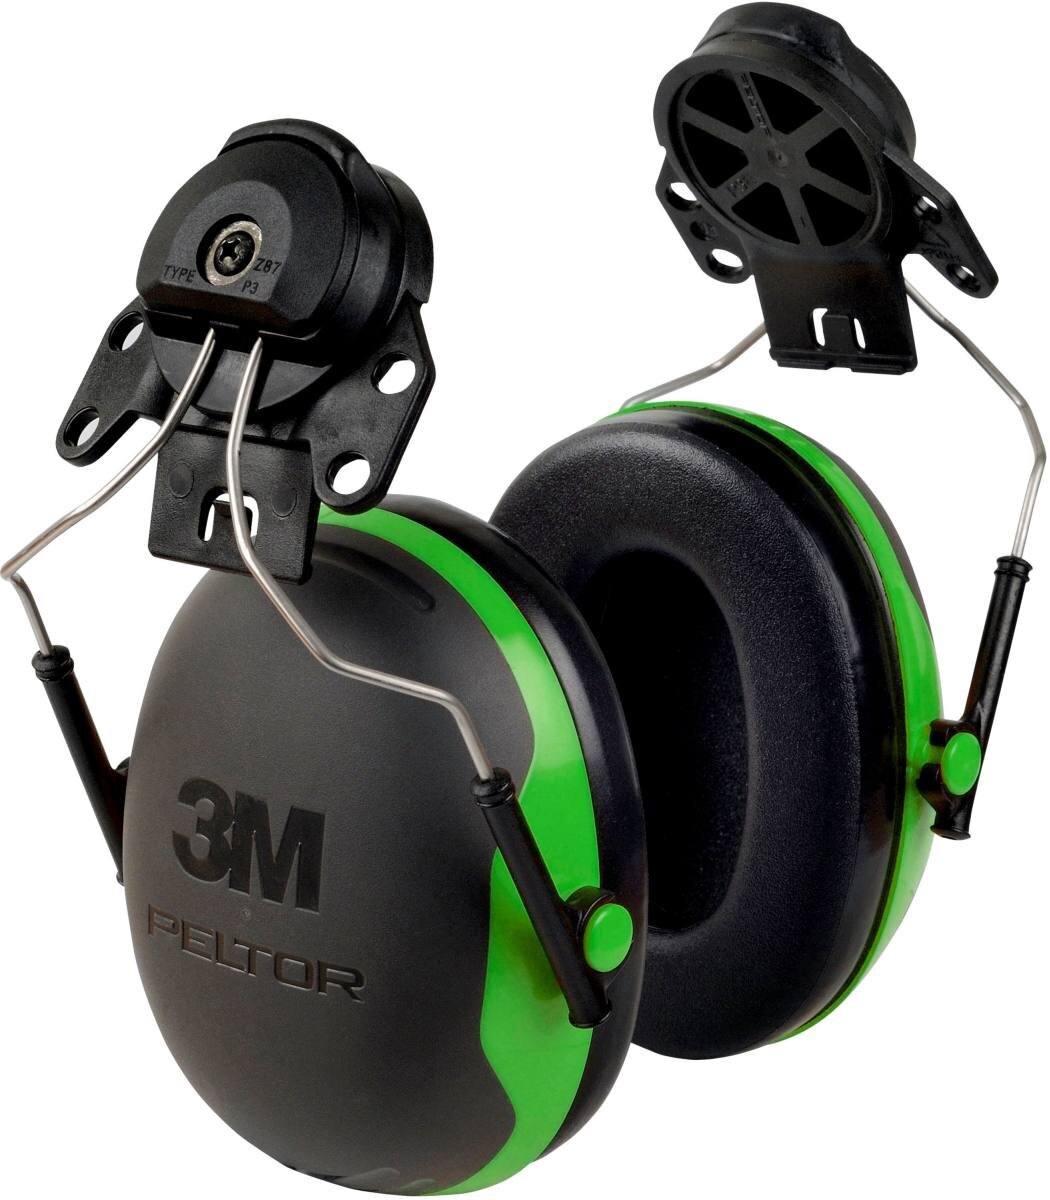 3M Peltor casque antibruit, X1P3E fixation sur casque, vert, SNR = 26 dB avec adaptateur de casque P3E (pour tous les casques 3M, sauf G2000)